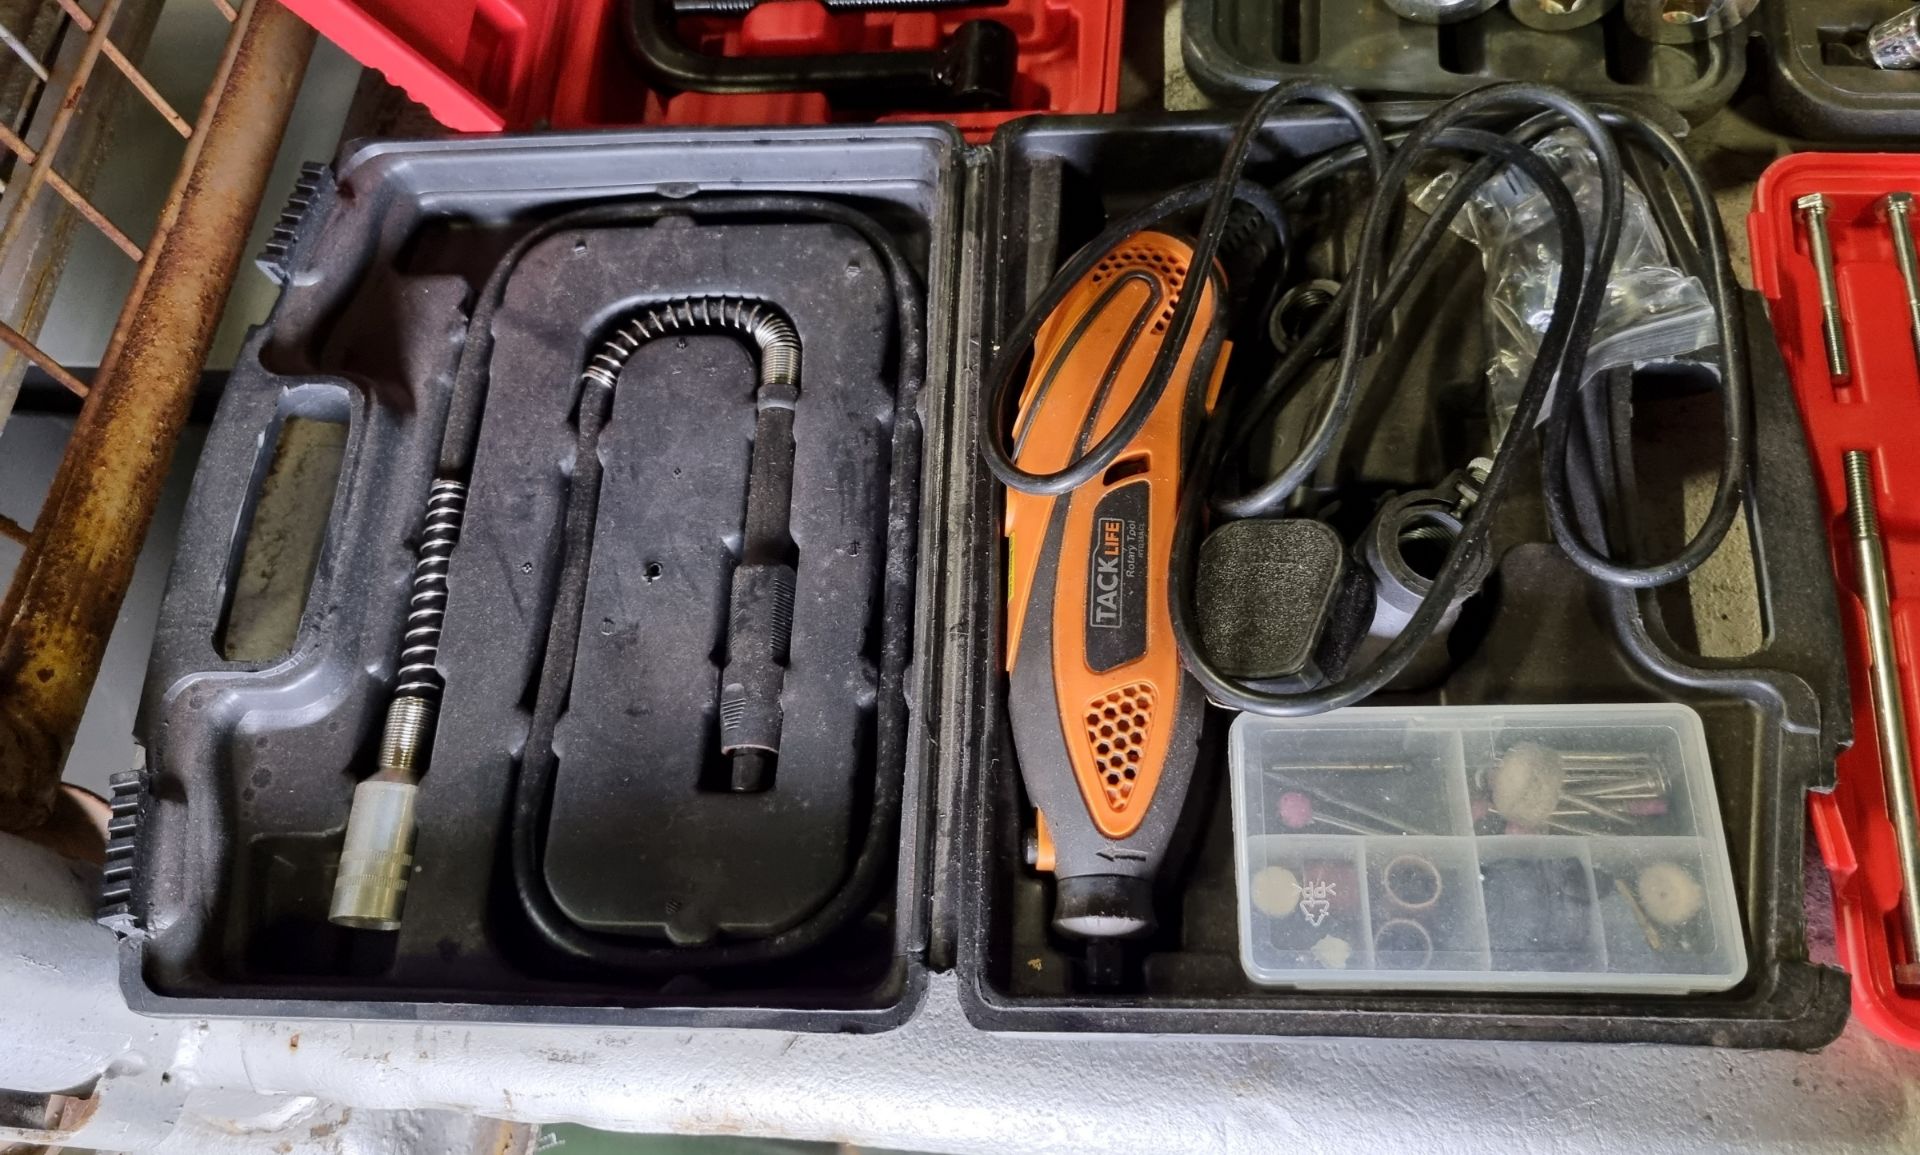 Workshop tools and equipment - Halfords socket sets (incomplete), trolley jack, 12V scissor jack - Image 4 of 9